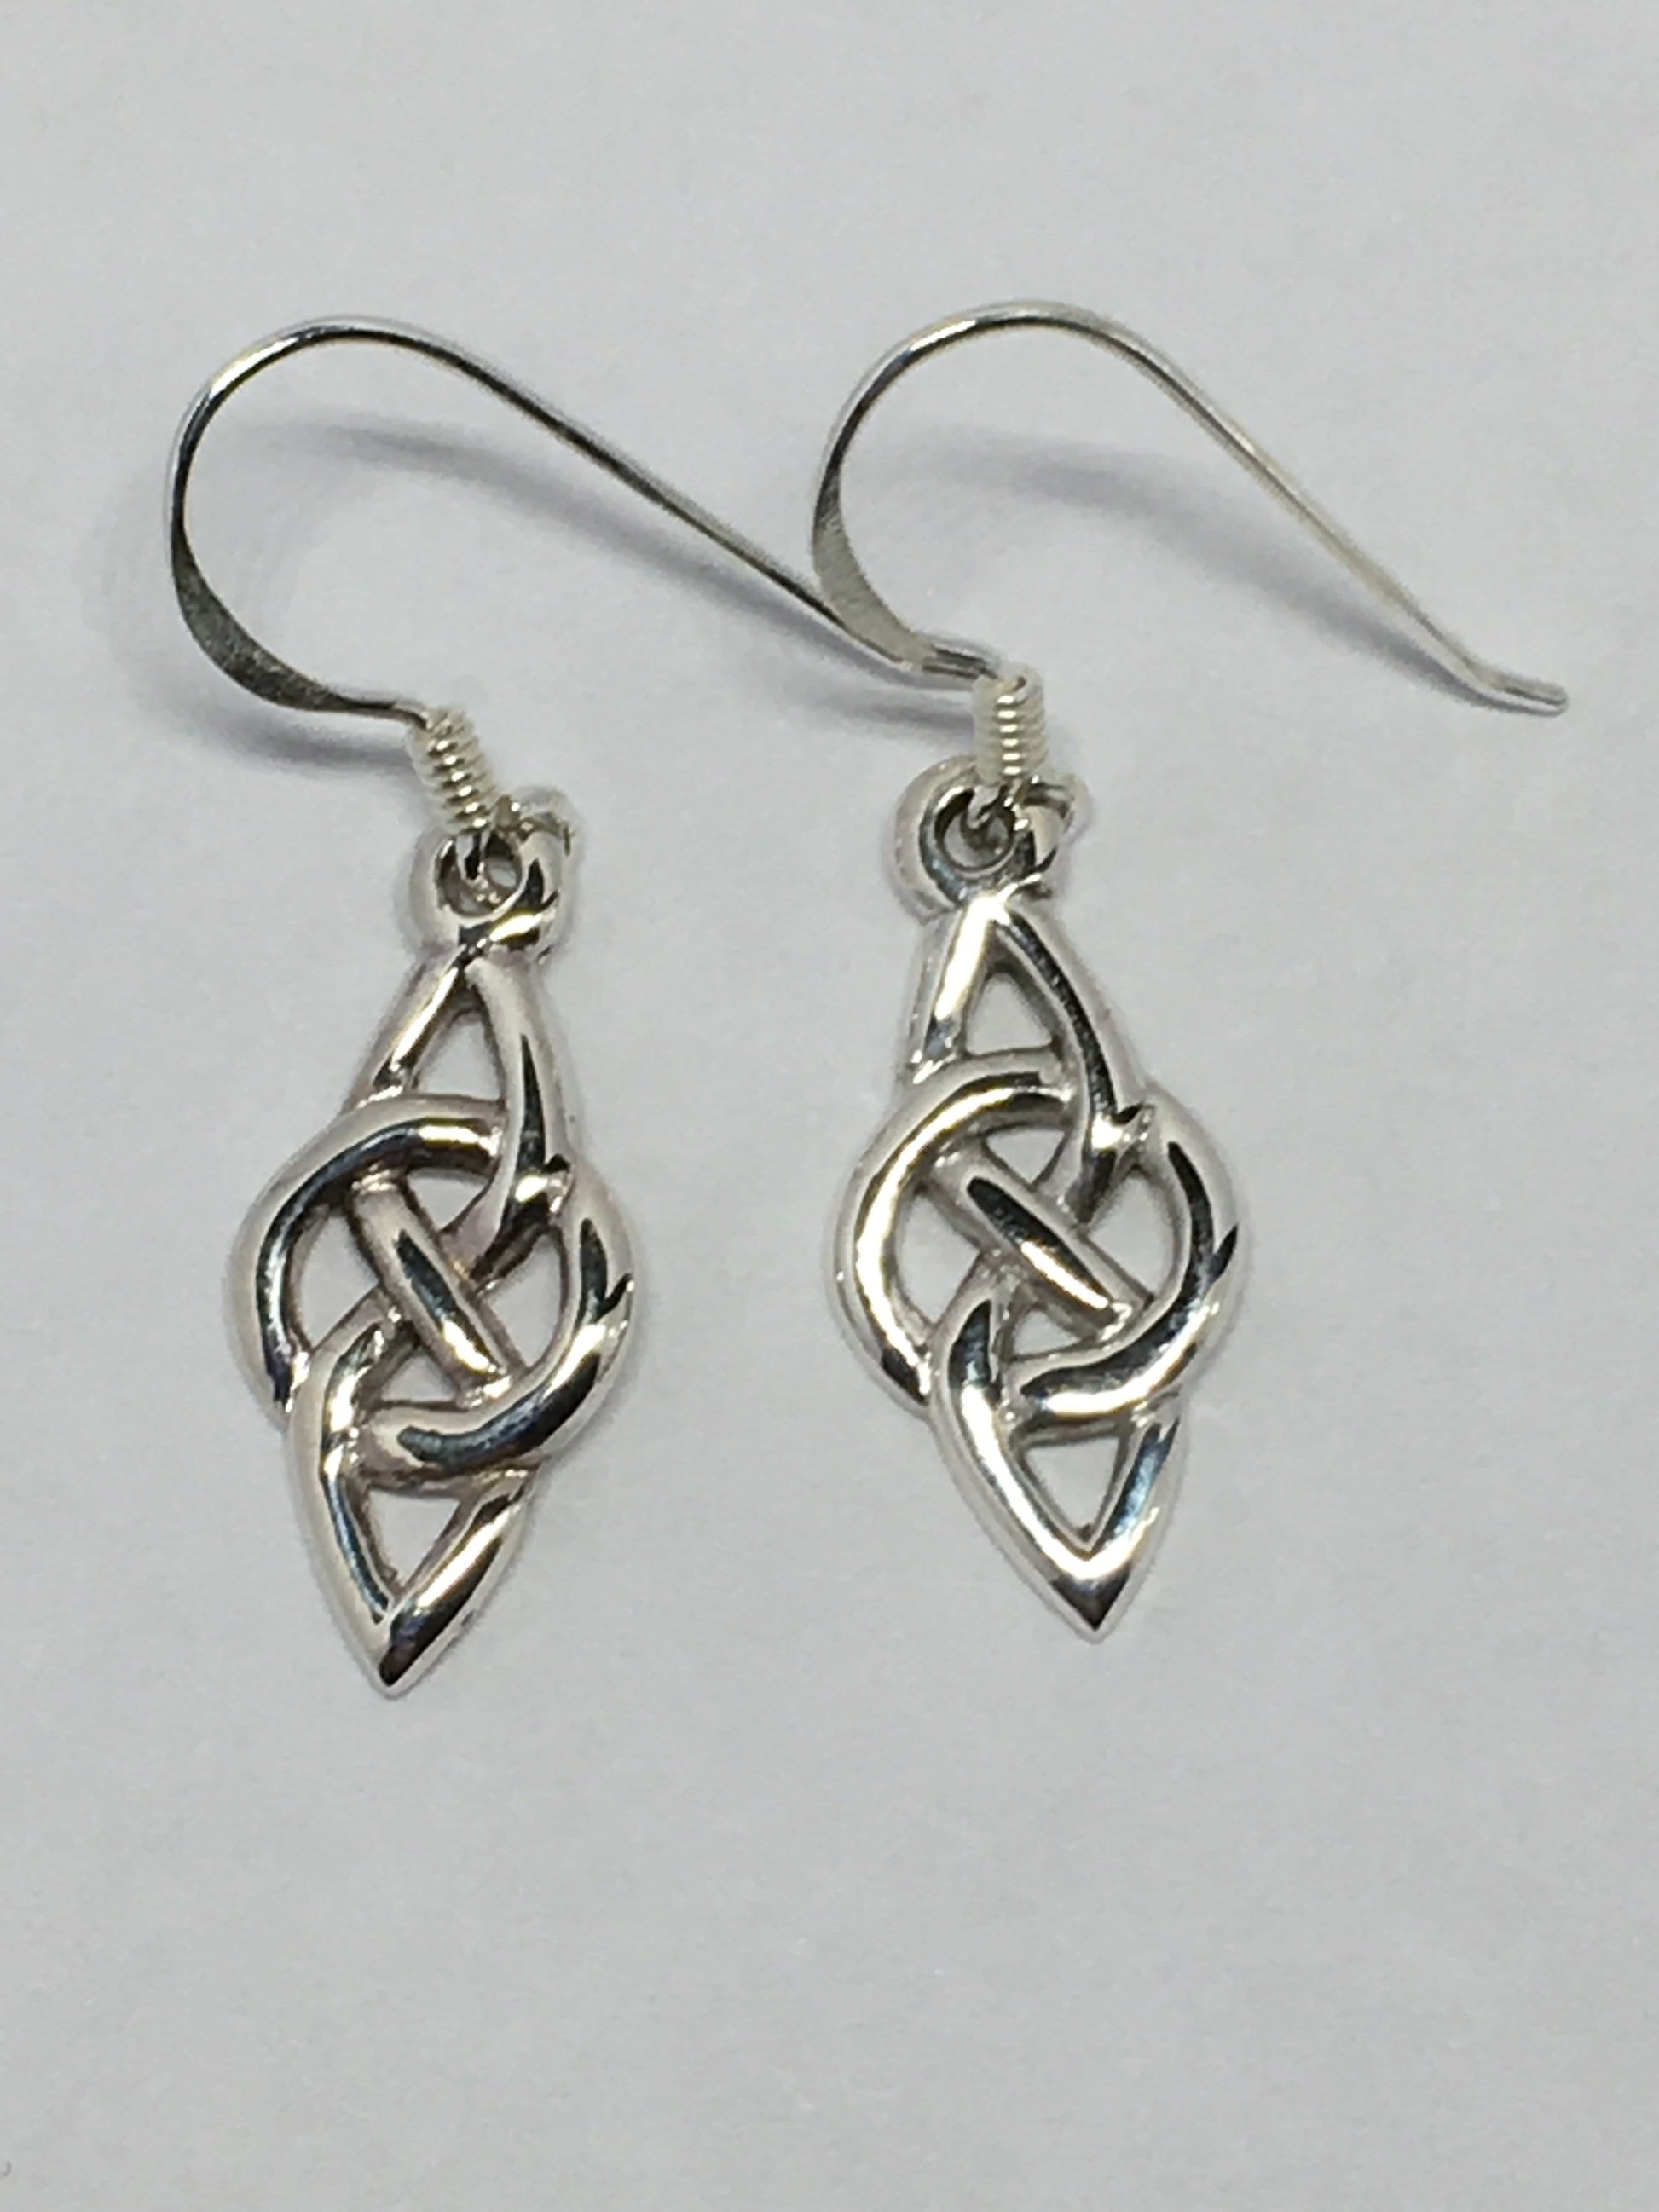 Handmade Sterling Silver Celtic Knot Earrings